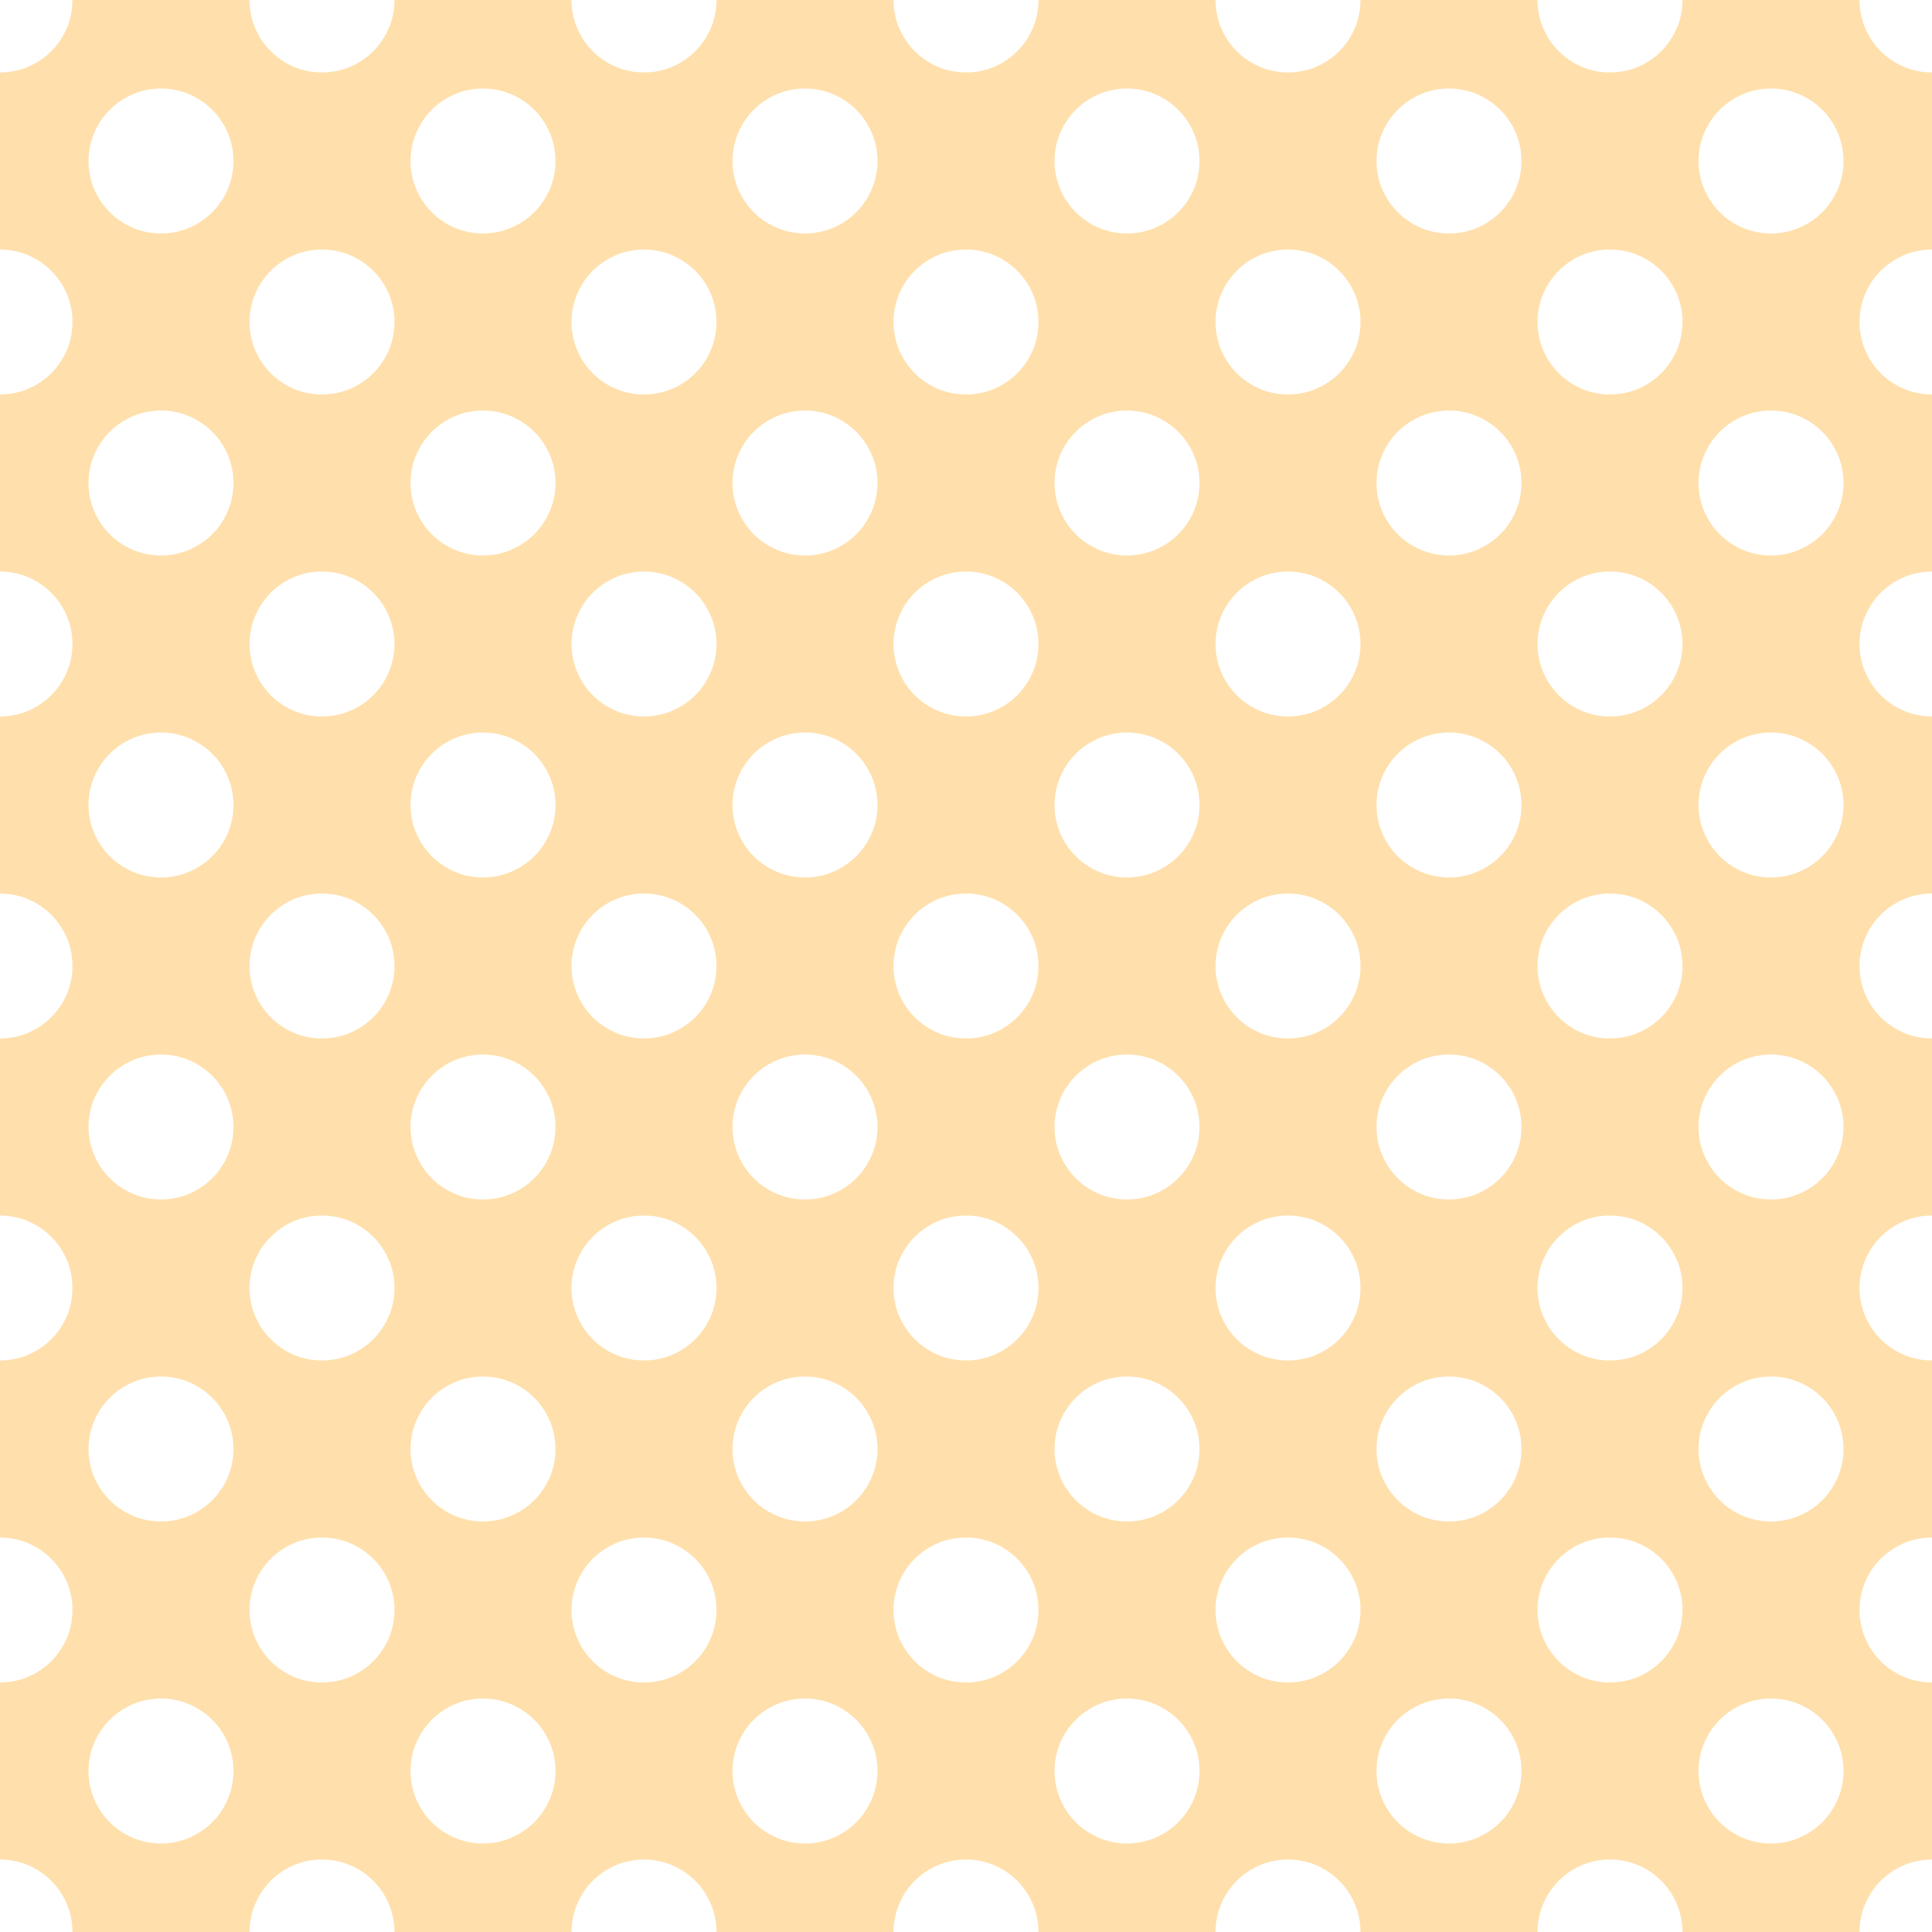 Polka Dot 1 cm Bisküvi - Beyaz Puantiye Dekoratif Baskı Kumaş